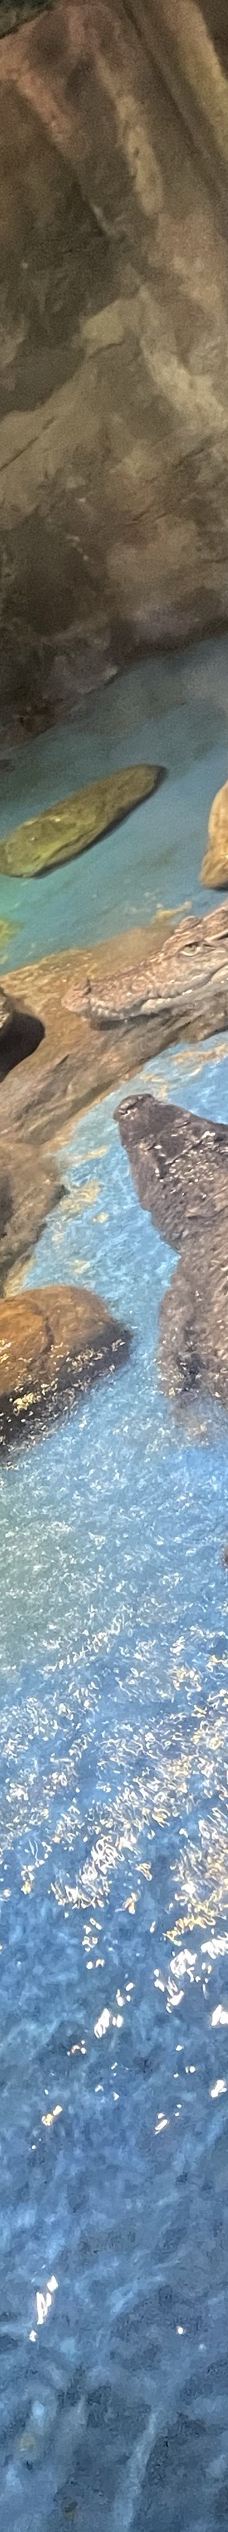 多彩贵州城极地海洋世界-贵阳-格赖瑙石巧儿